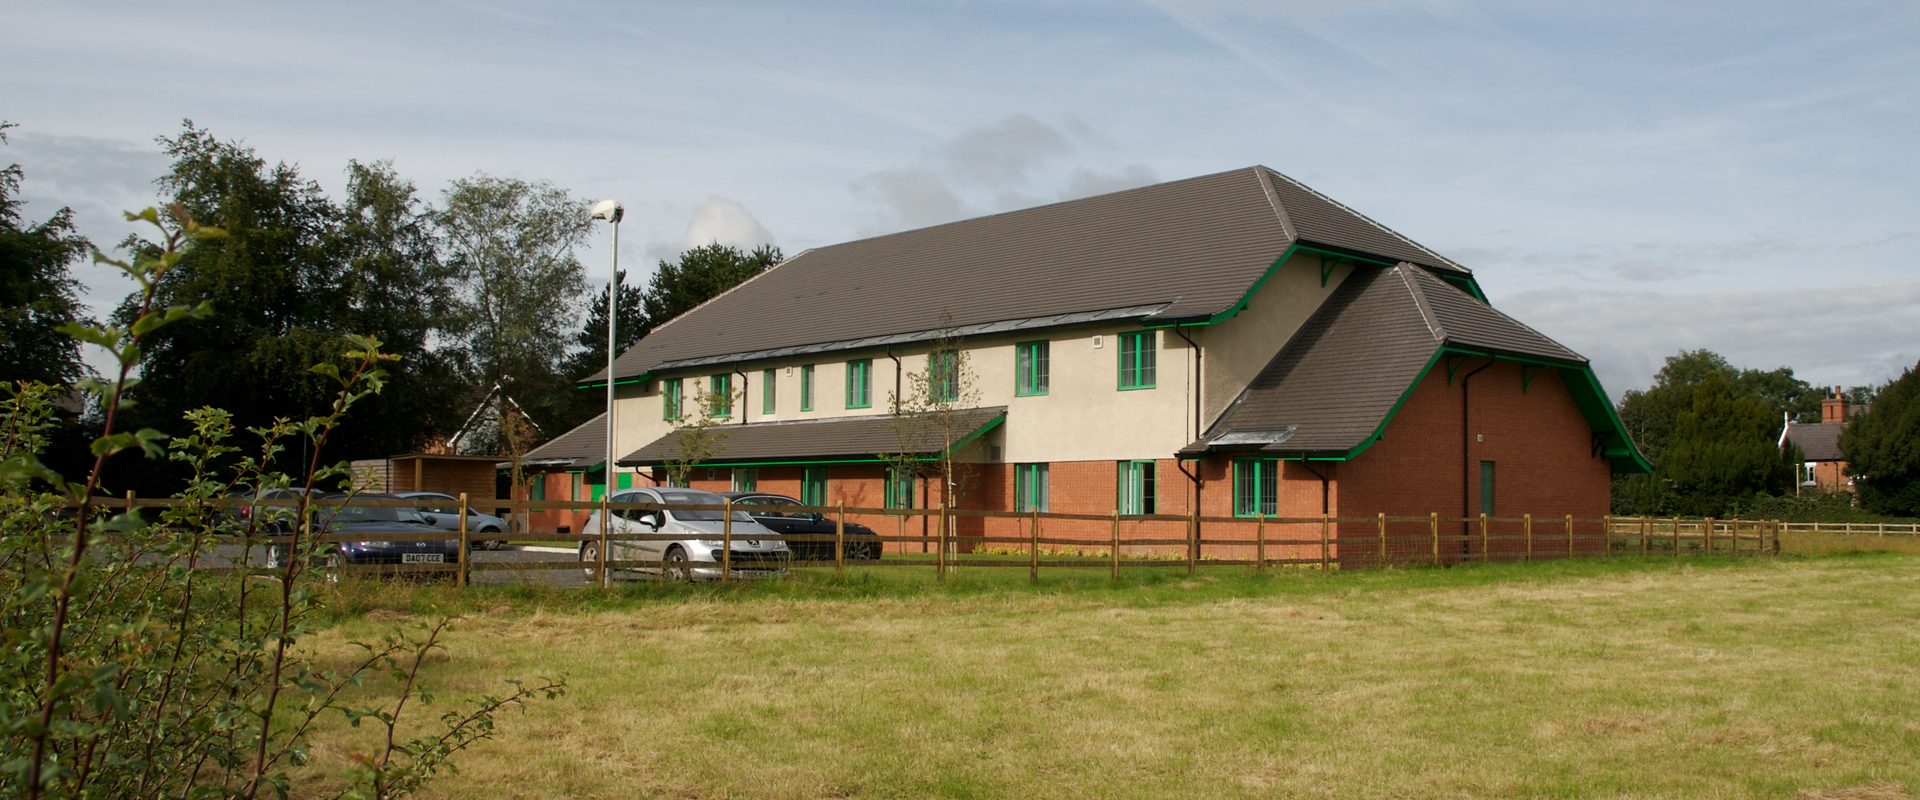 Bunbury Primary Care Centre